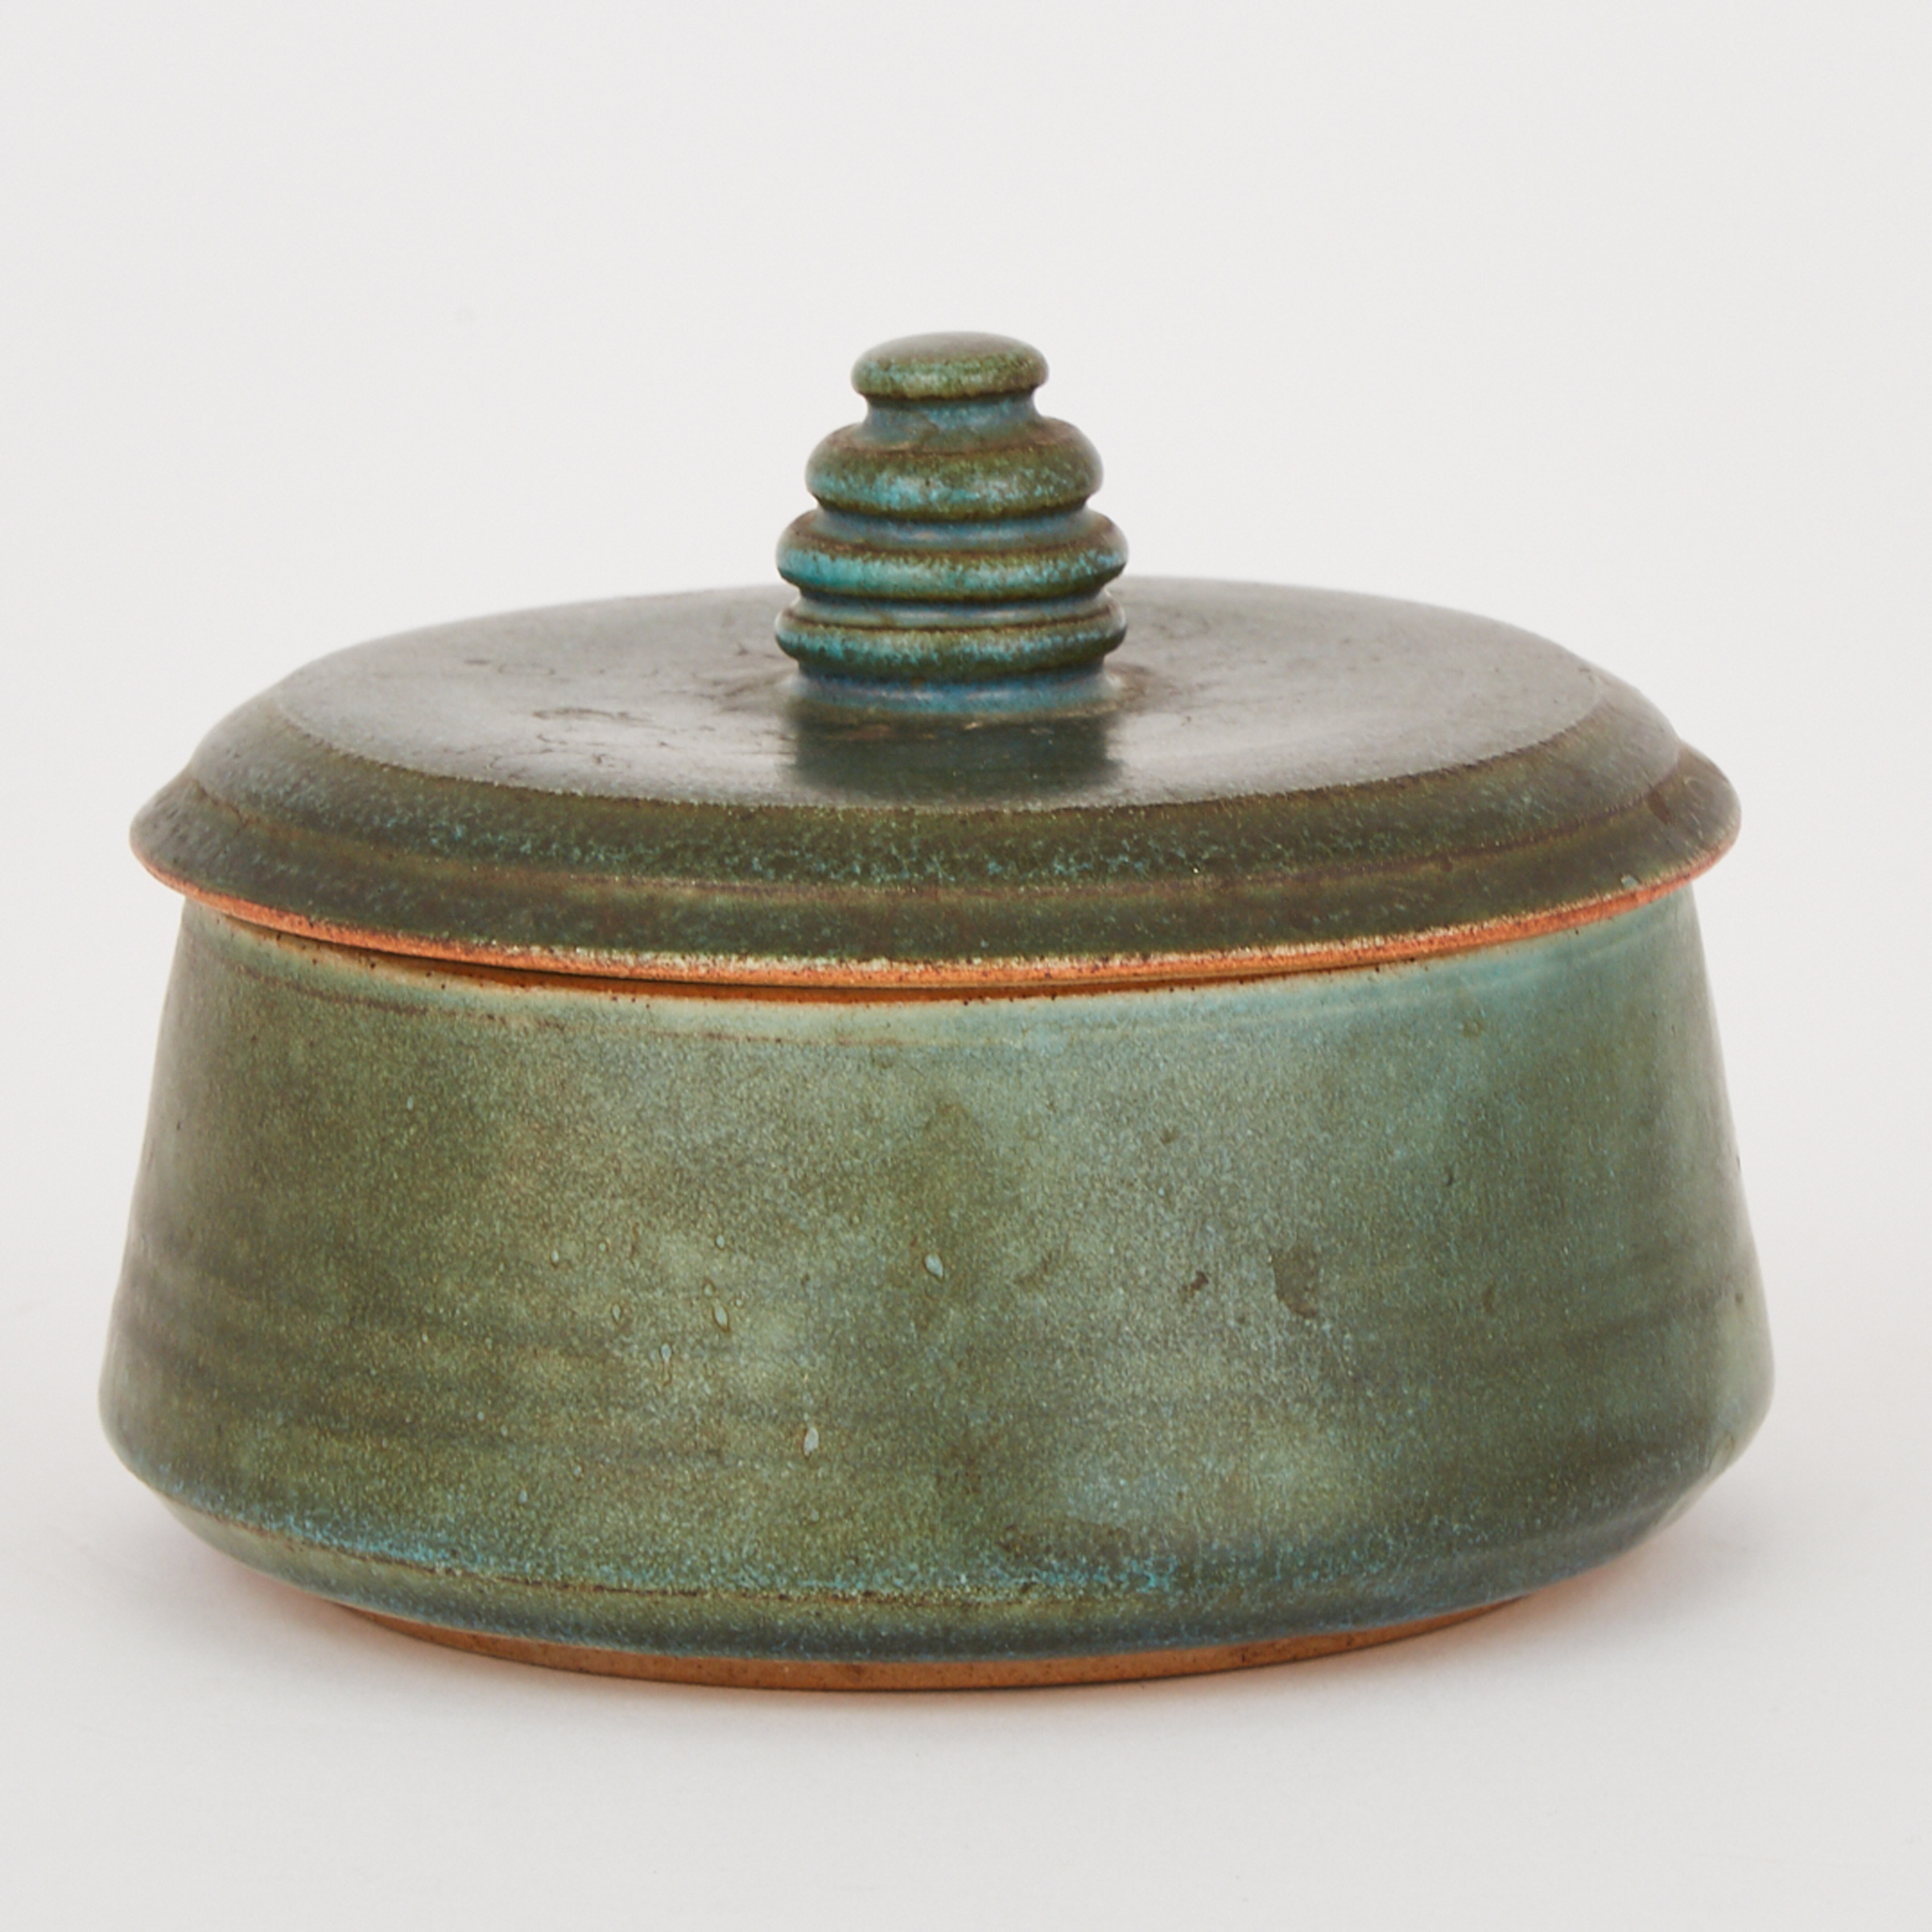 Deichmann Stoneware Covered Jar, mid-20th century